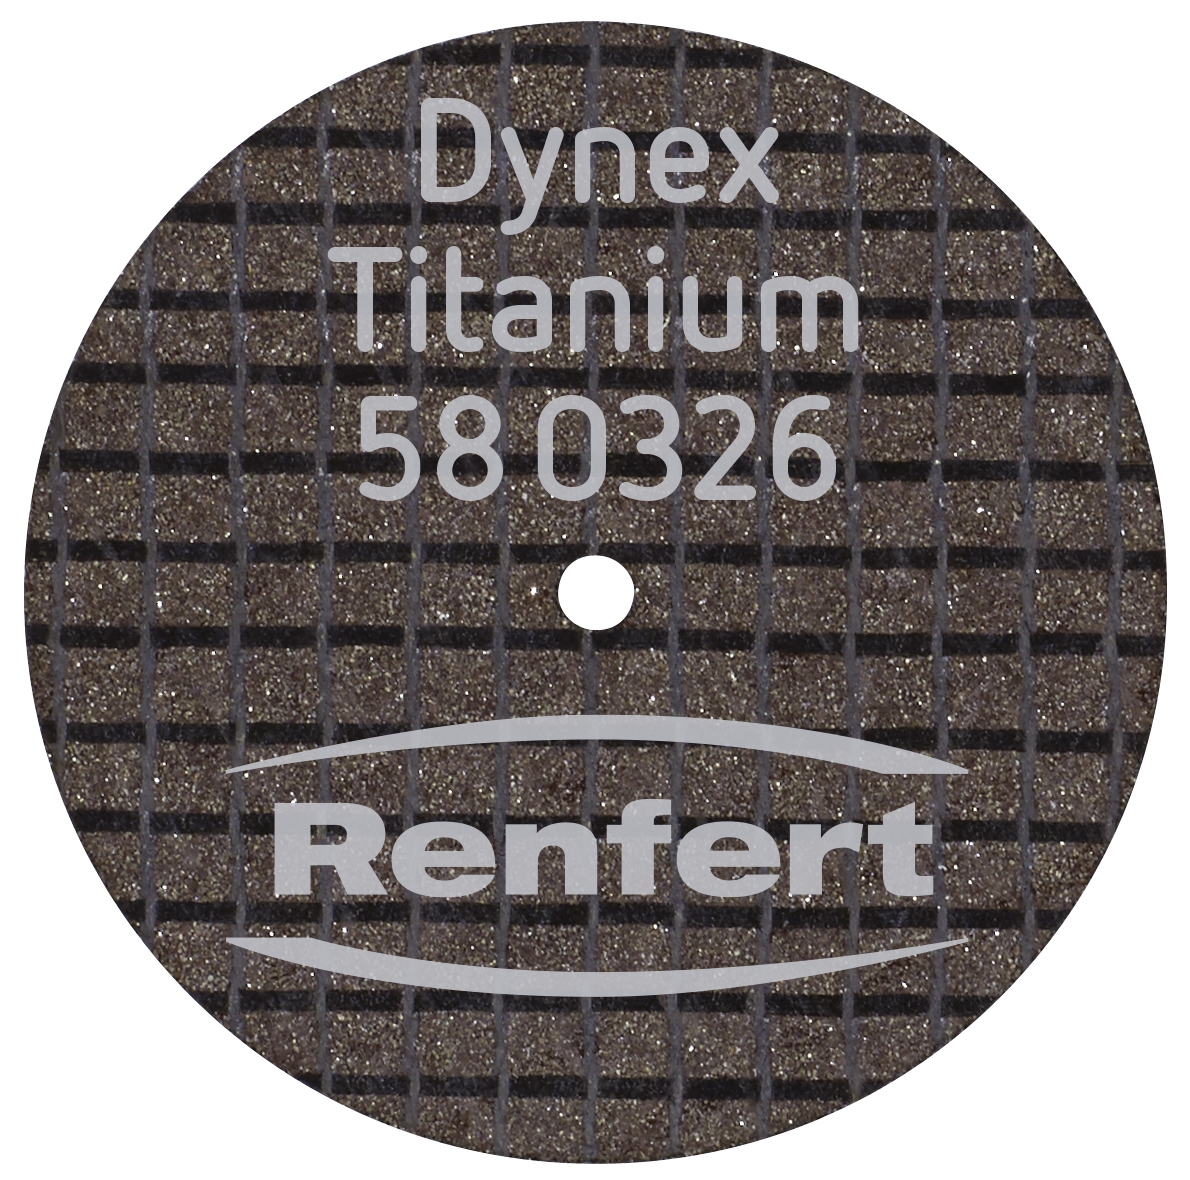 Dynex Titanium disques à tronçonner  07-936